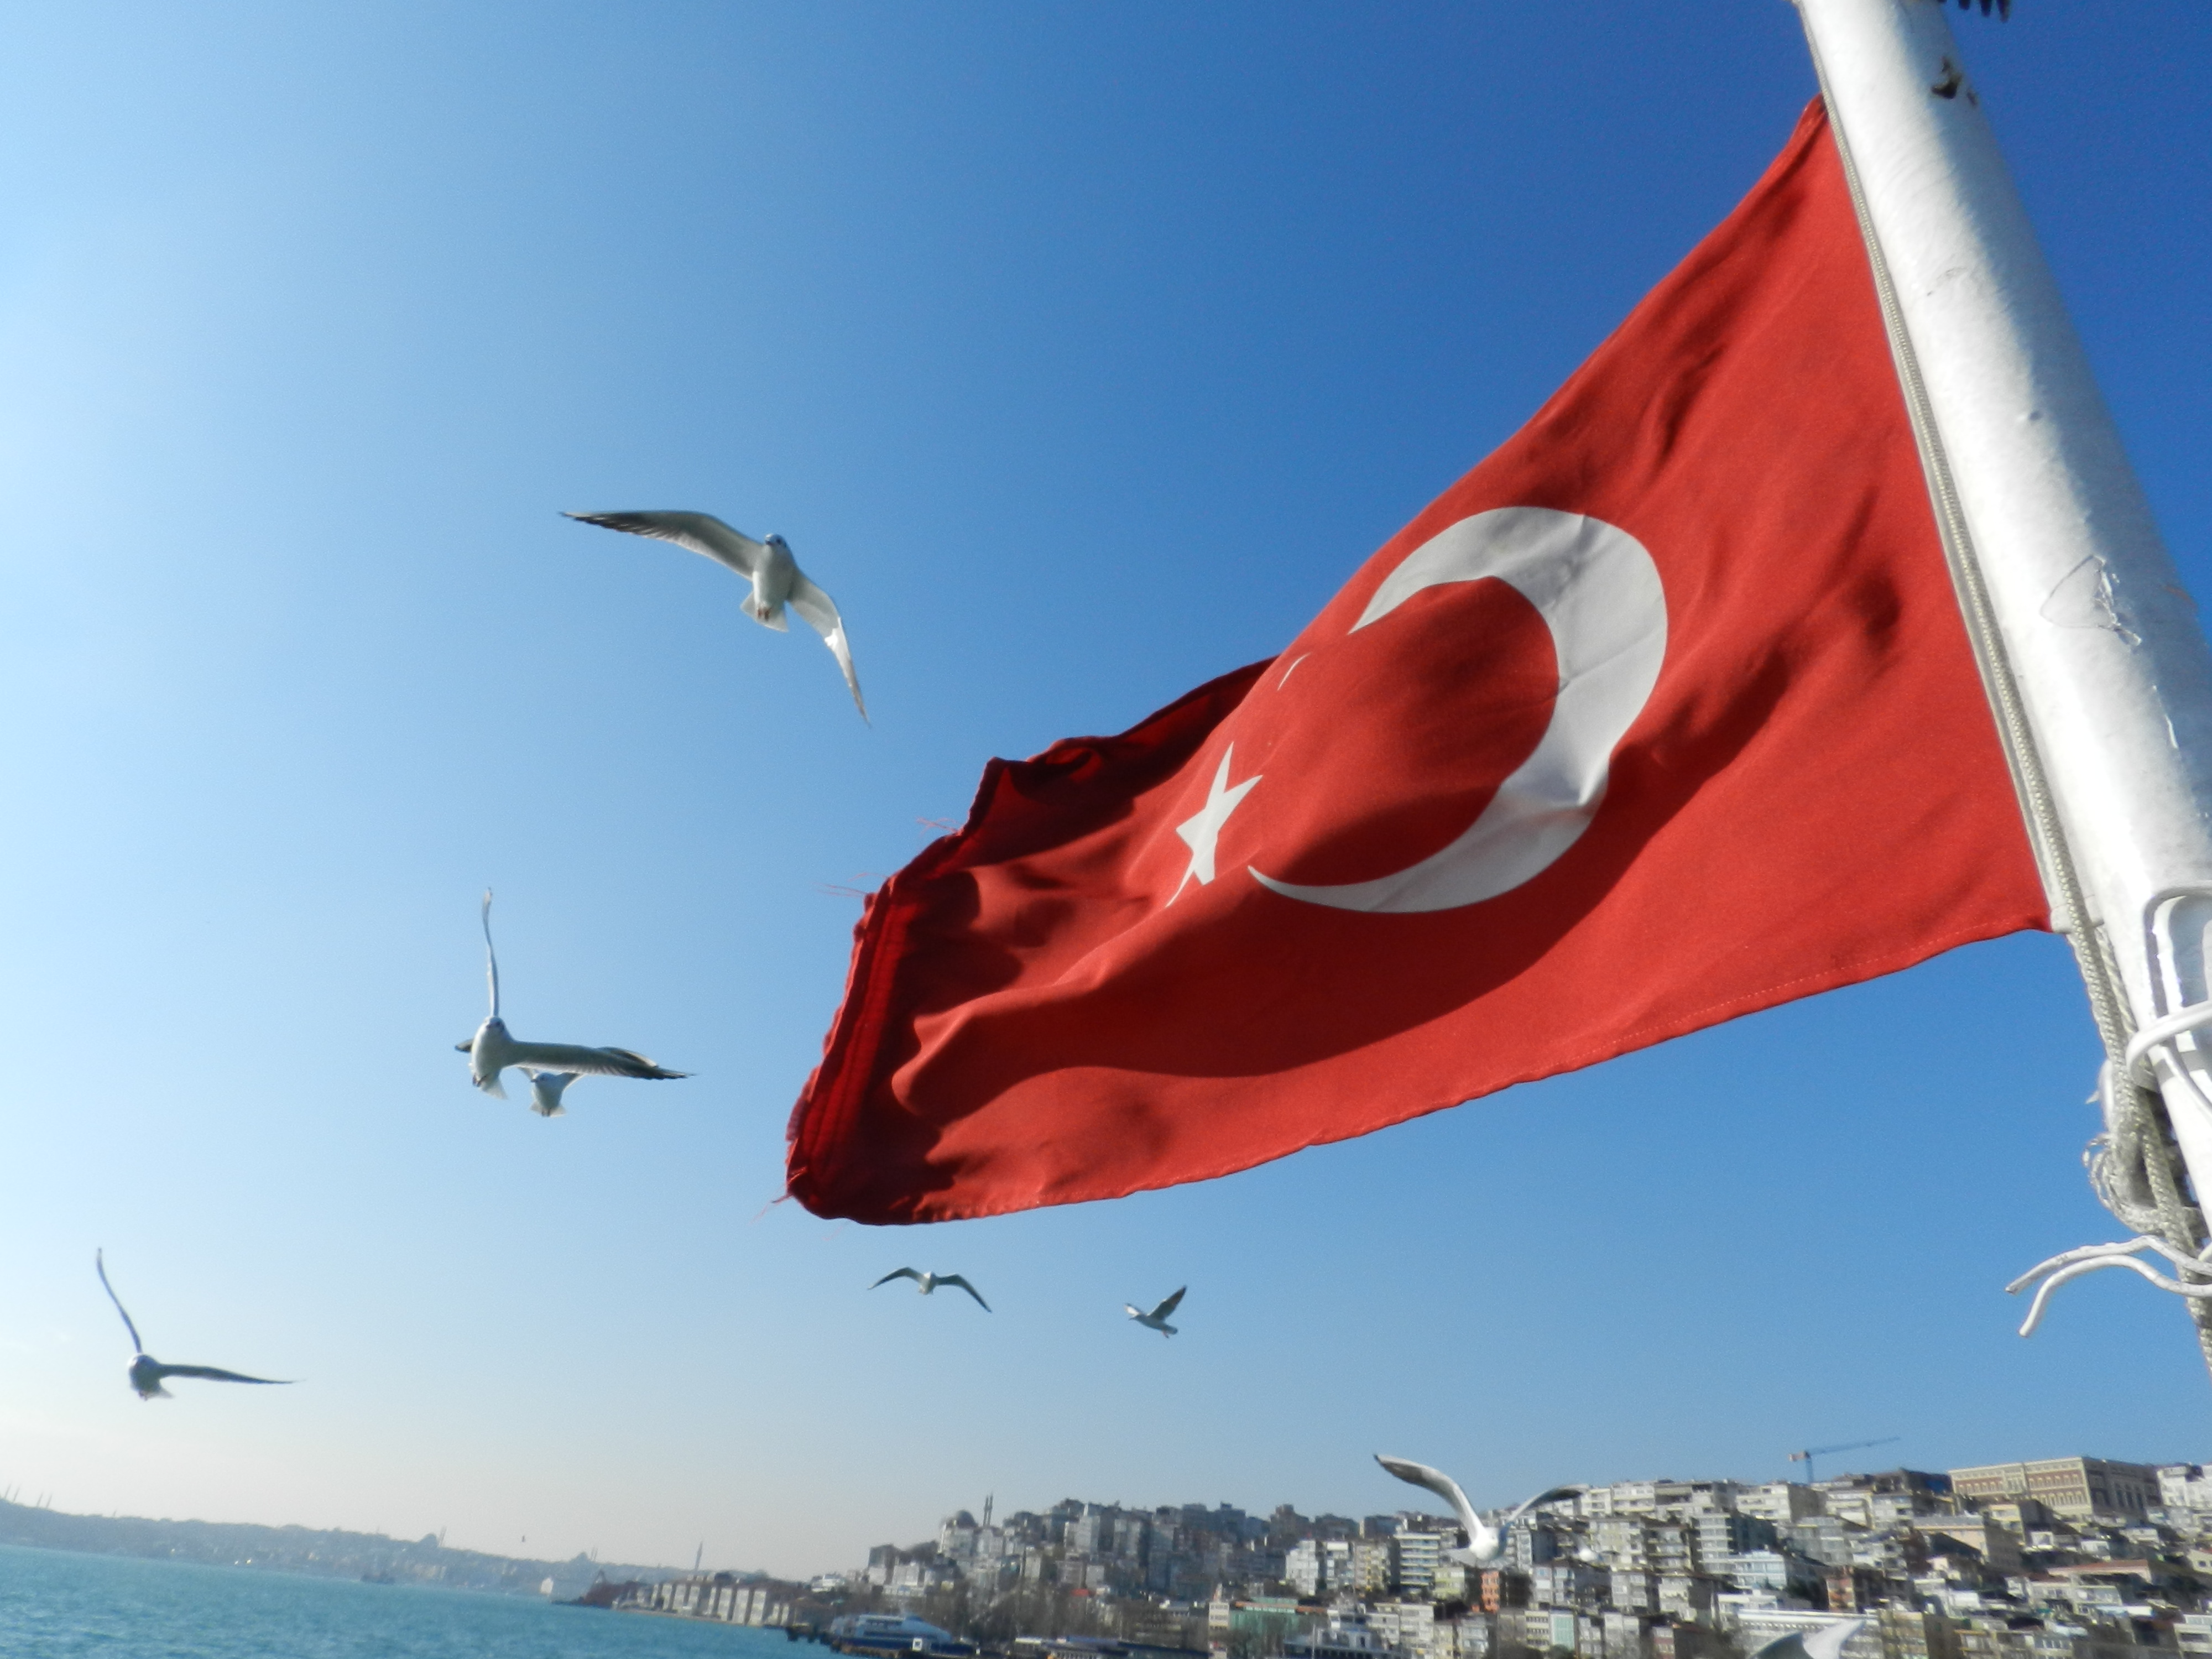 bandeira turca